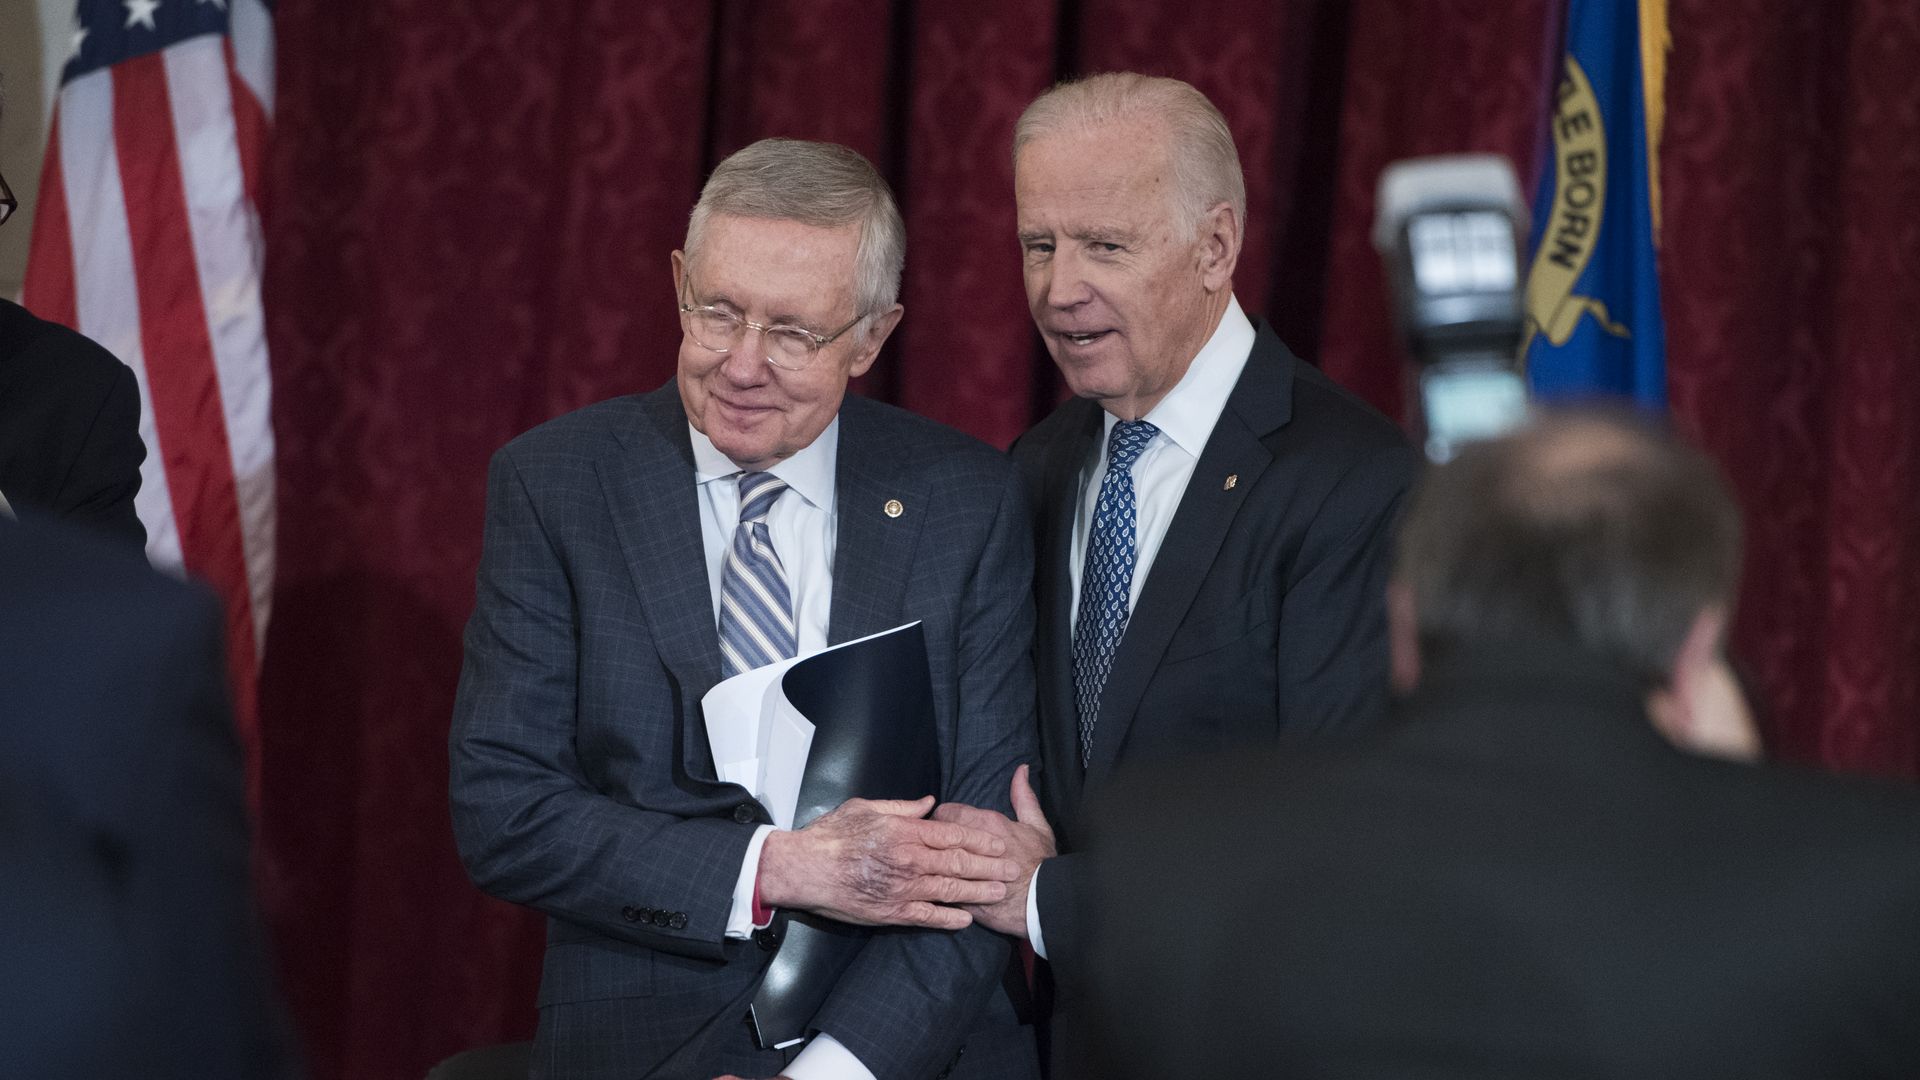 Harry Reid and Joe Biden